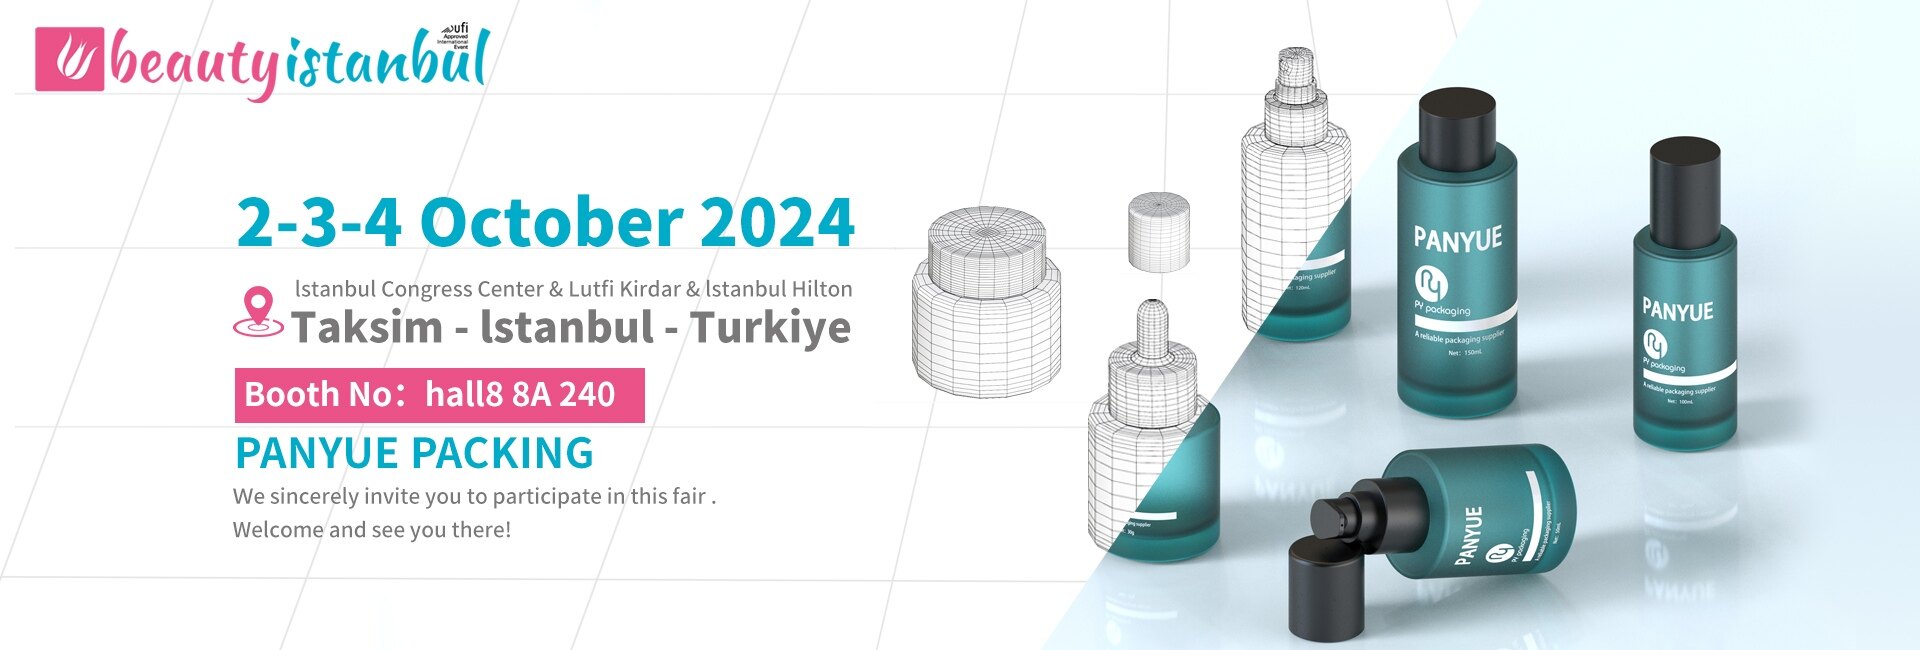 2024 Beauty Estambul: Panyue Packaging presenta las últimas soluciones de embalaje